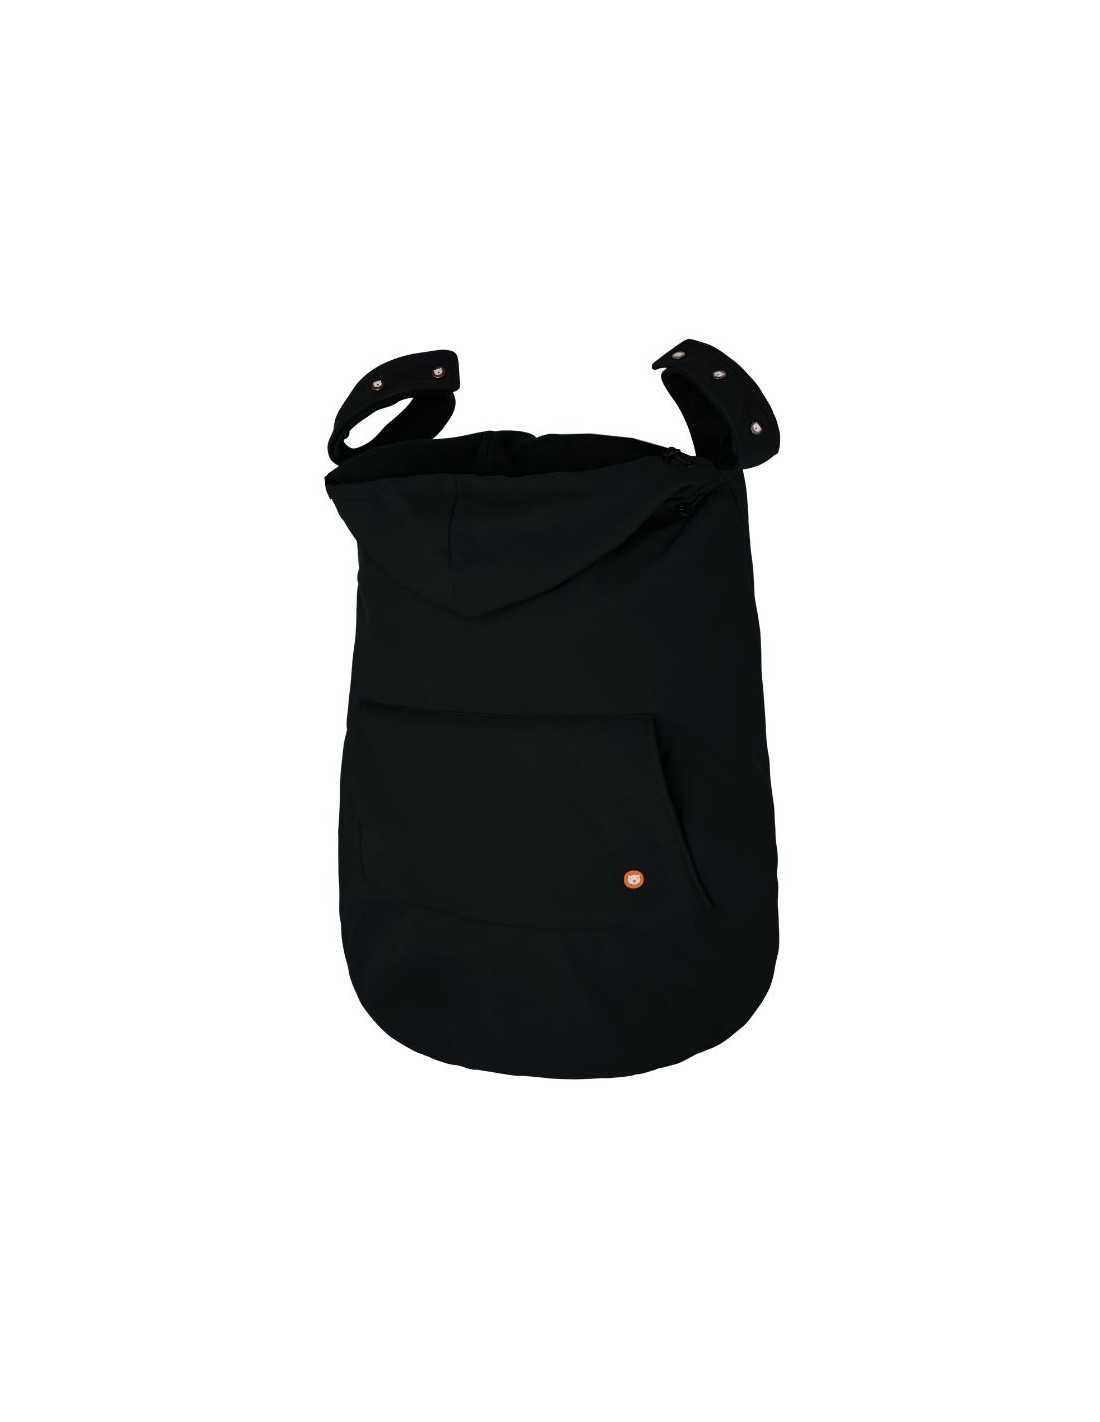 Cobertor de Porteo Soft Shell Negro: Protección y Confort en Invierno